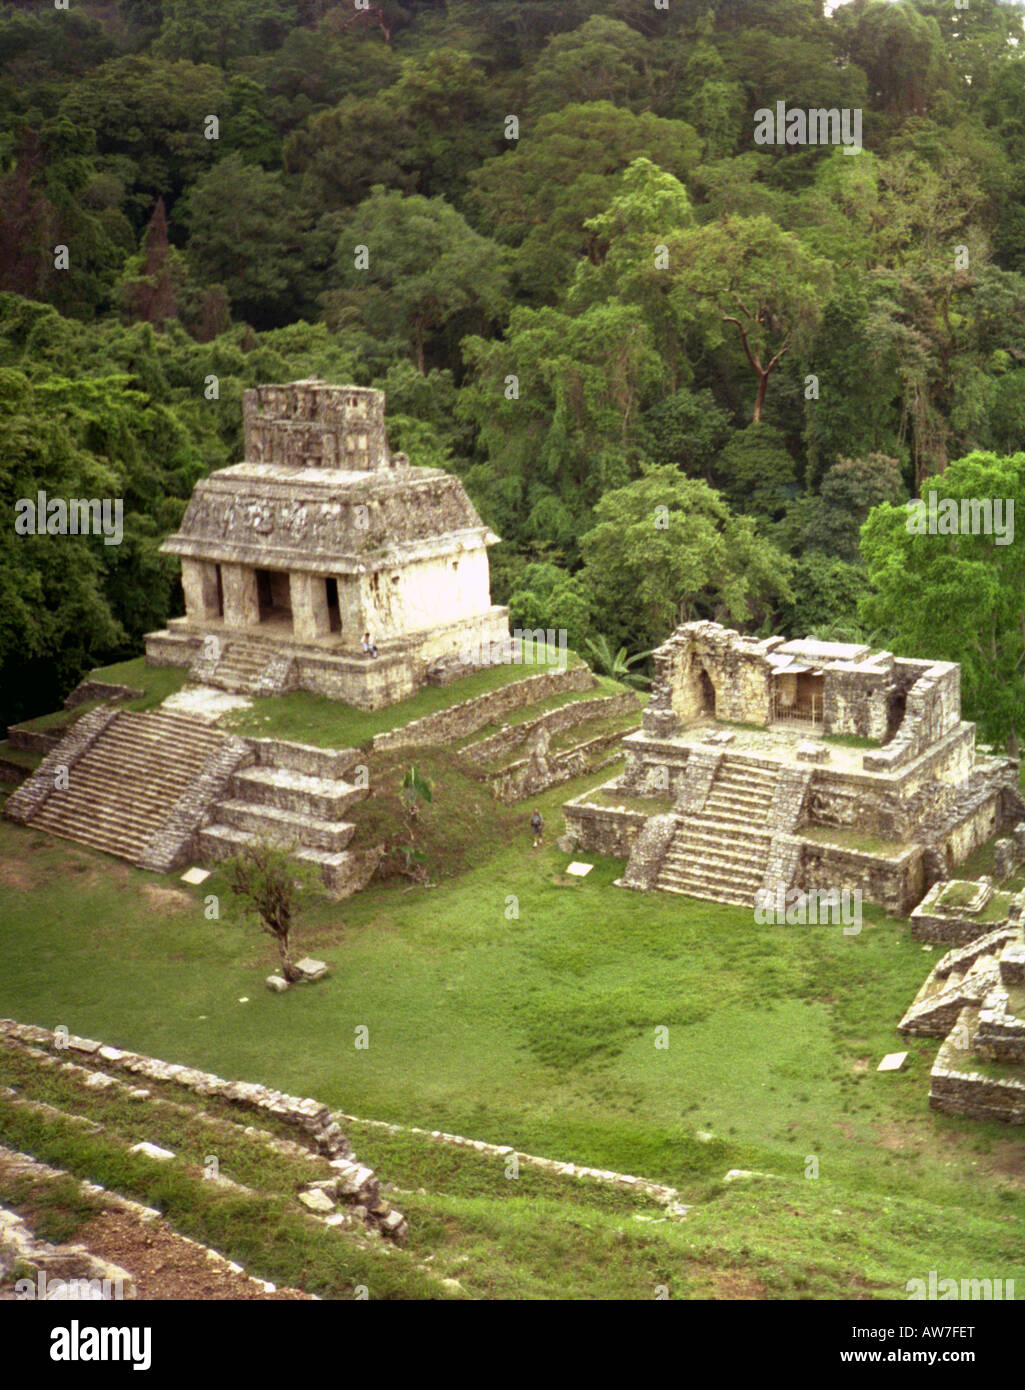 Site Maya de magnifiques pyramides ville antique arbre jungle sauvage tropical exotique Palenque Yucatan Mexique Amérique Centrale Amérique Latine Banque D'Images